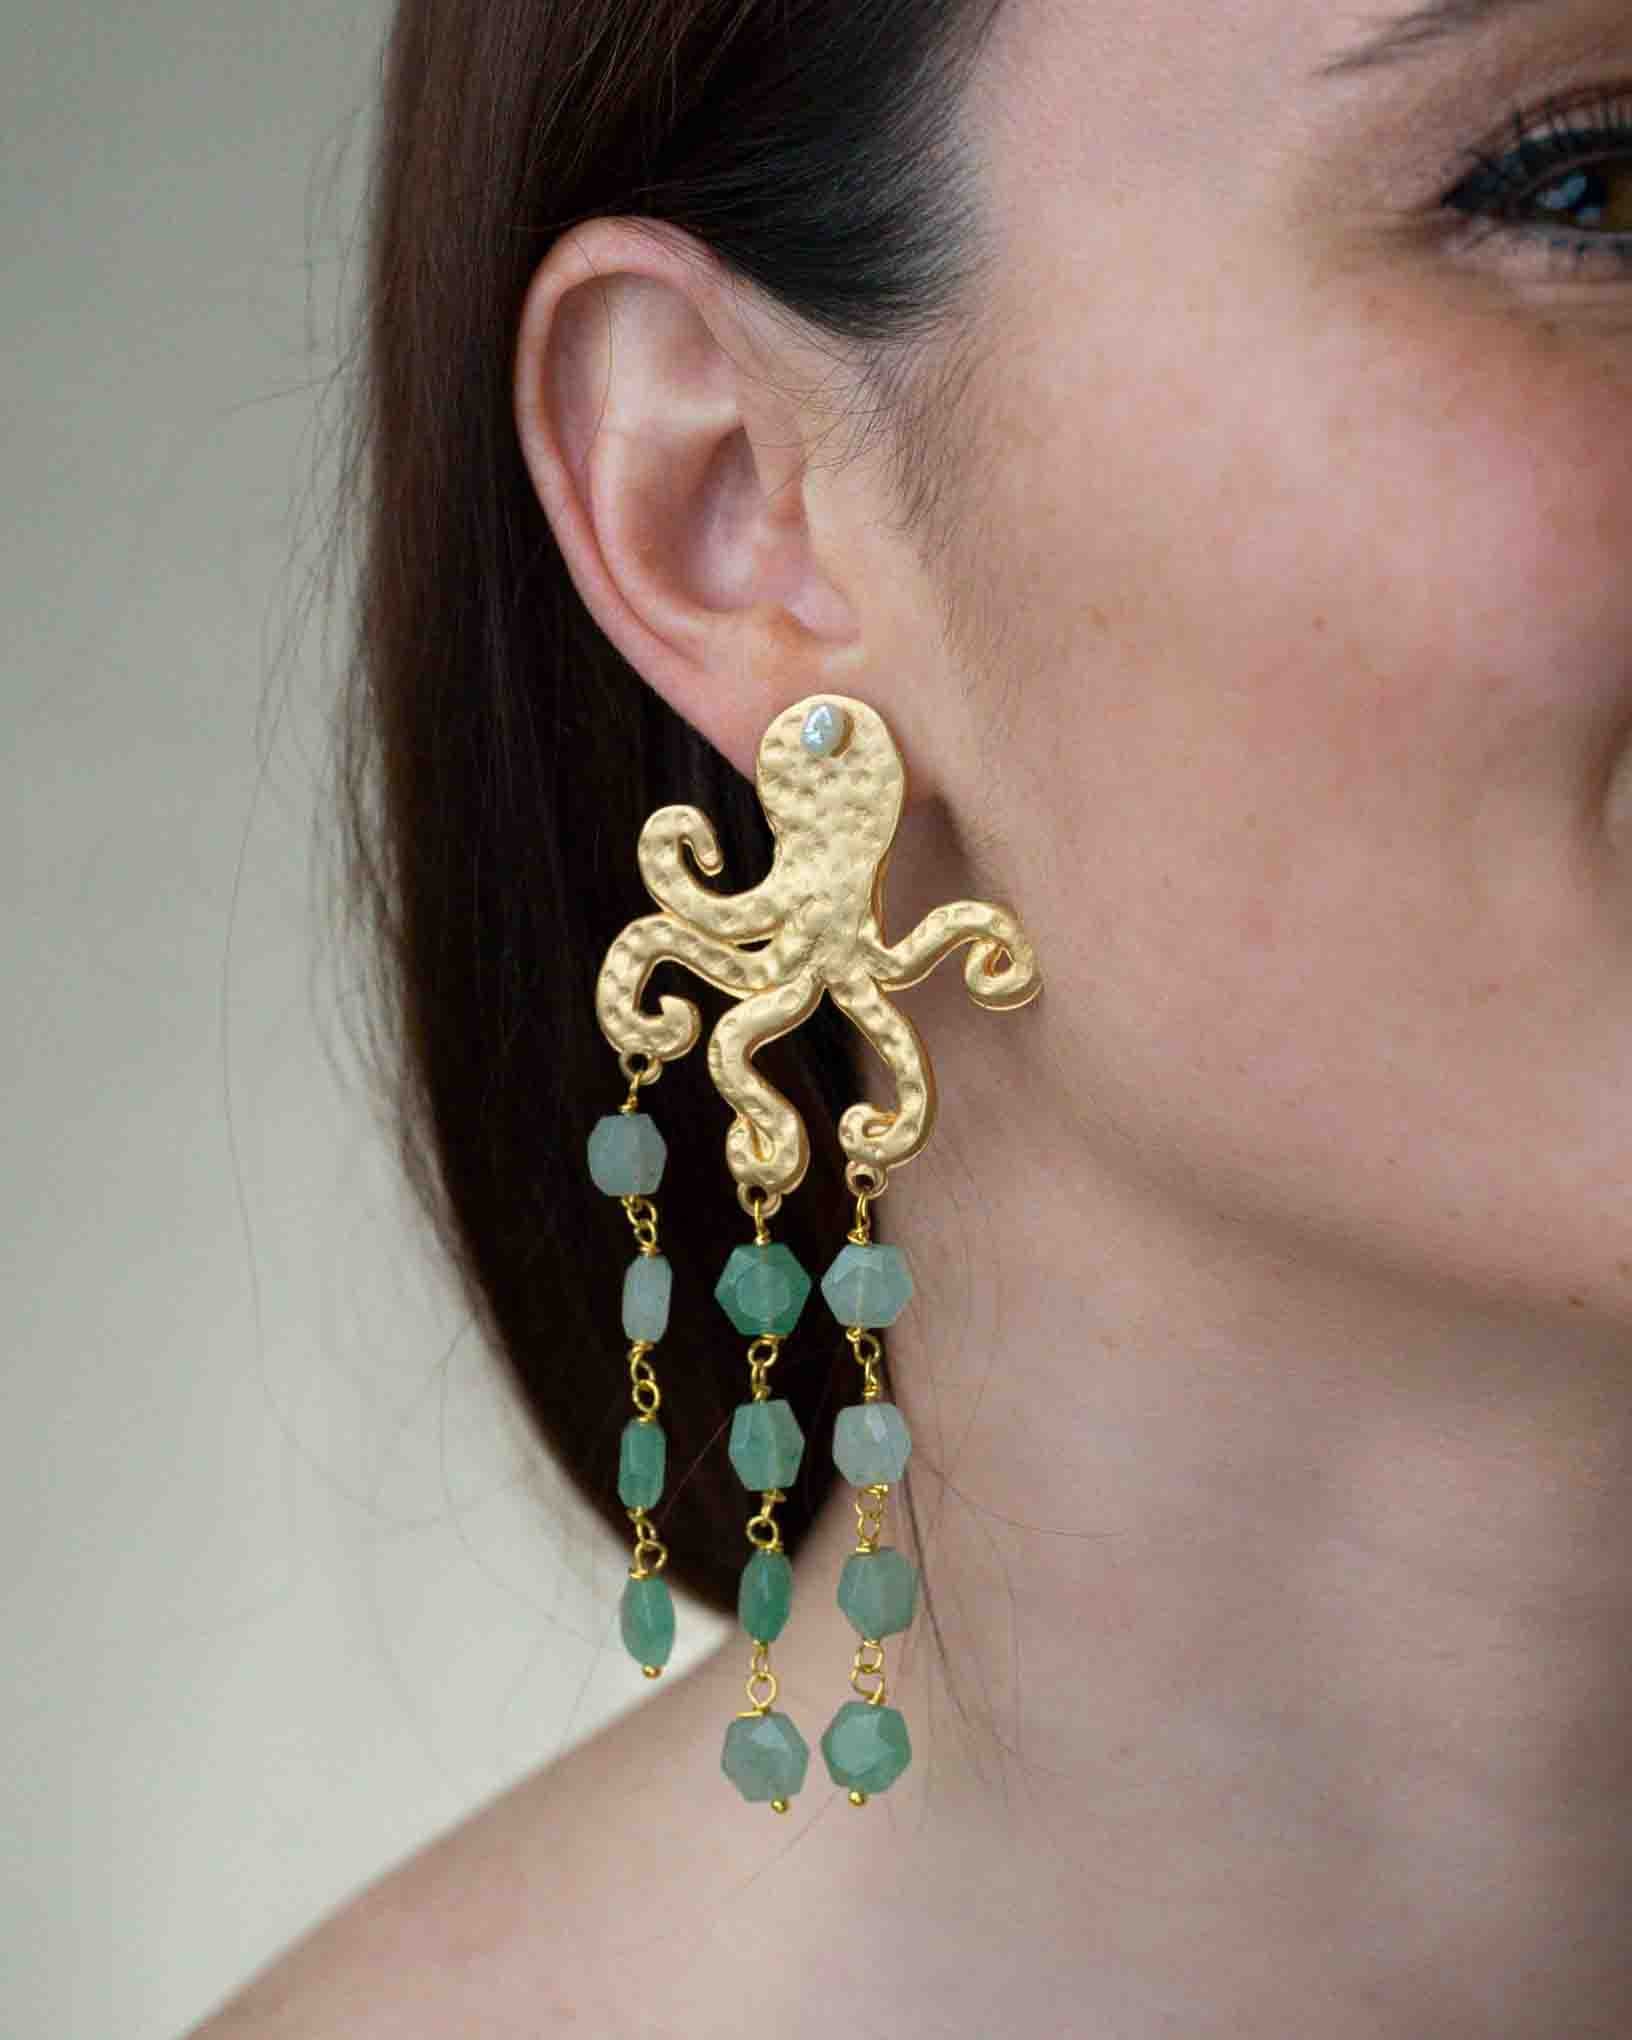 Ohrring Fritto Misto aus der Kollektion I Classici von Donna Rachele Jewelry